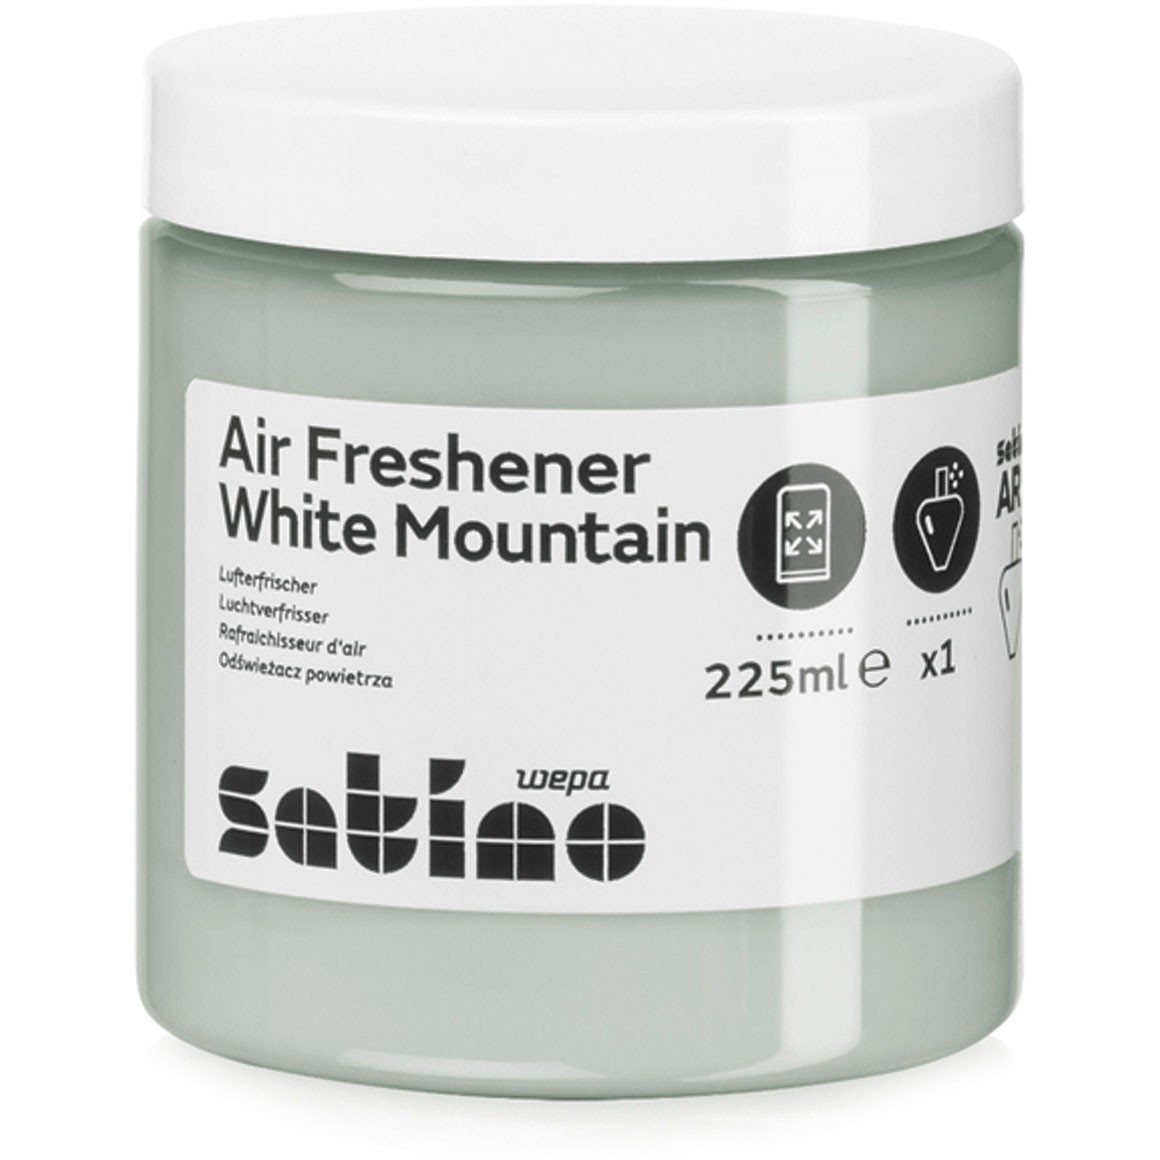 Santino Eco luftfrisker refill White Mountain